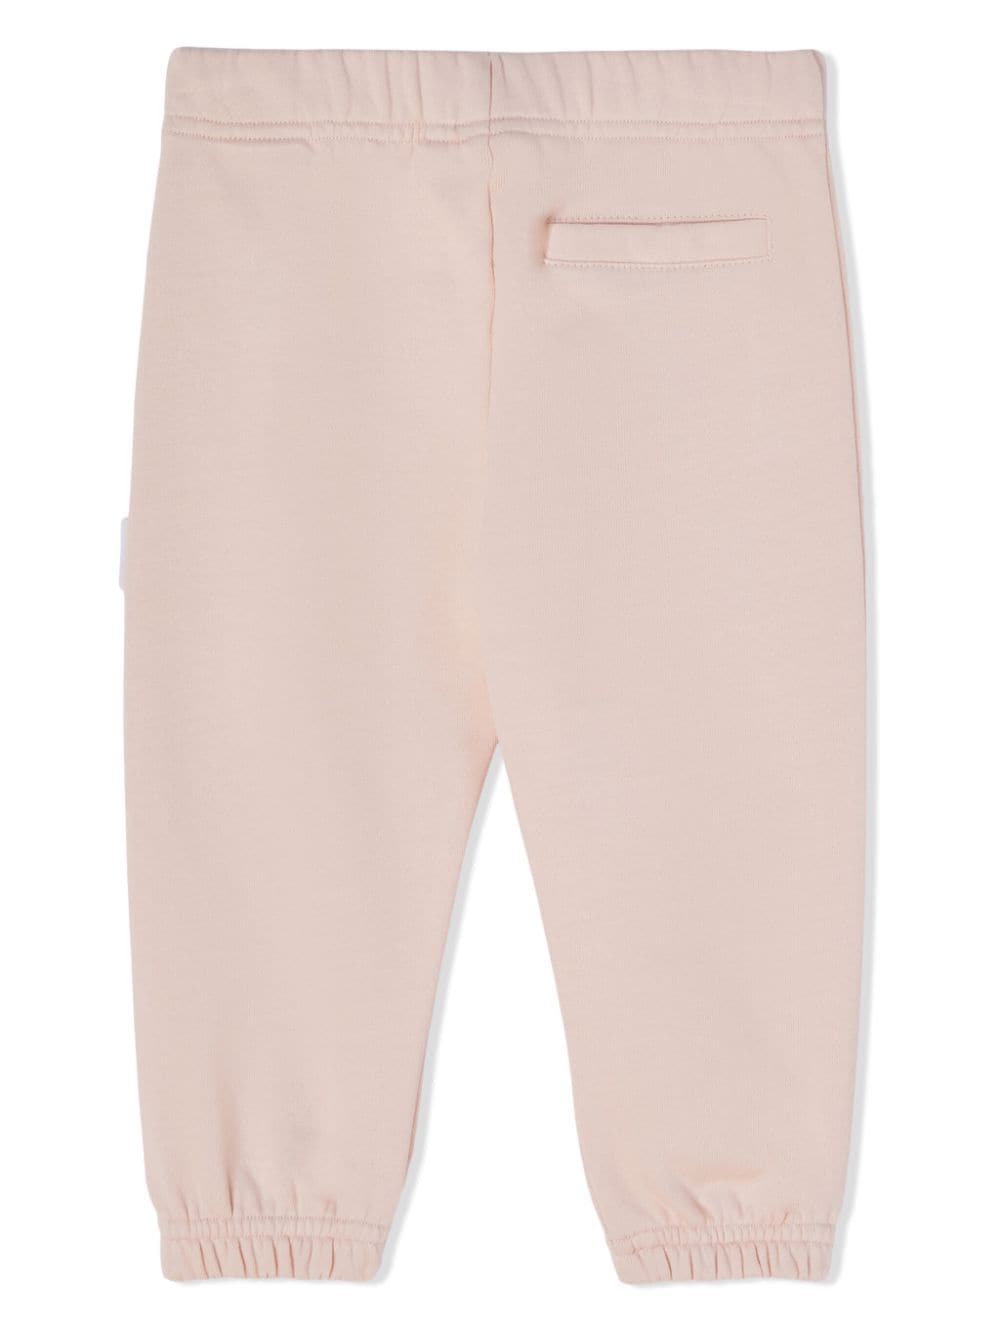 Pantaloni sportivi rosa chiaro neonata con stampa